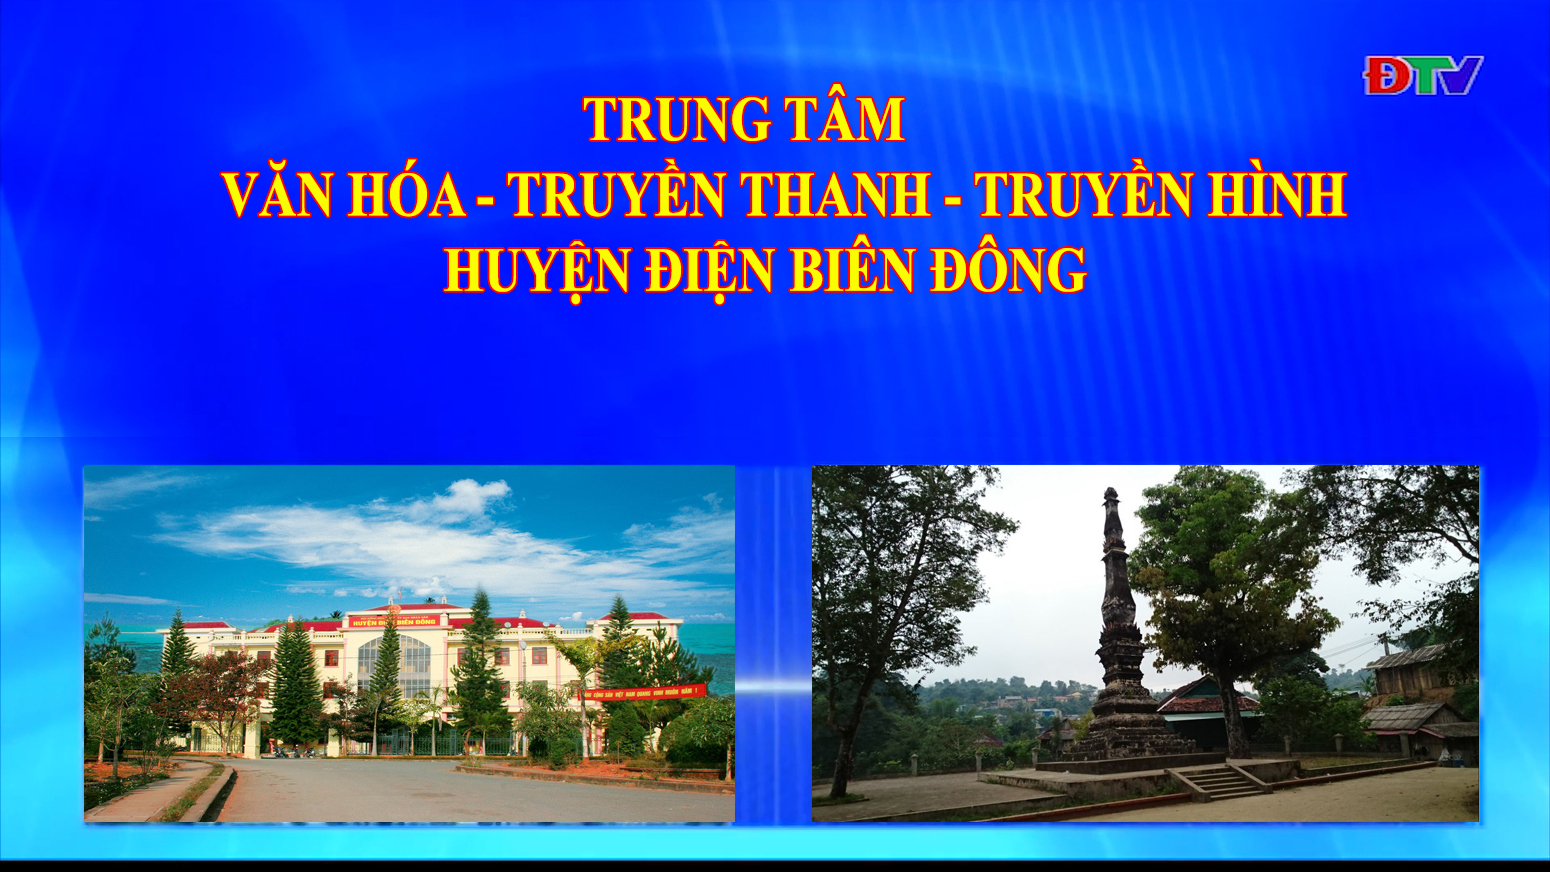 Trung tâm VH-TTTH huyên Điện Biên Đông (Ngày 10-10-2020)